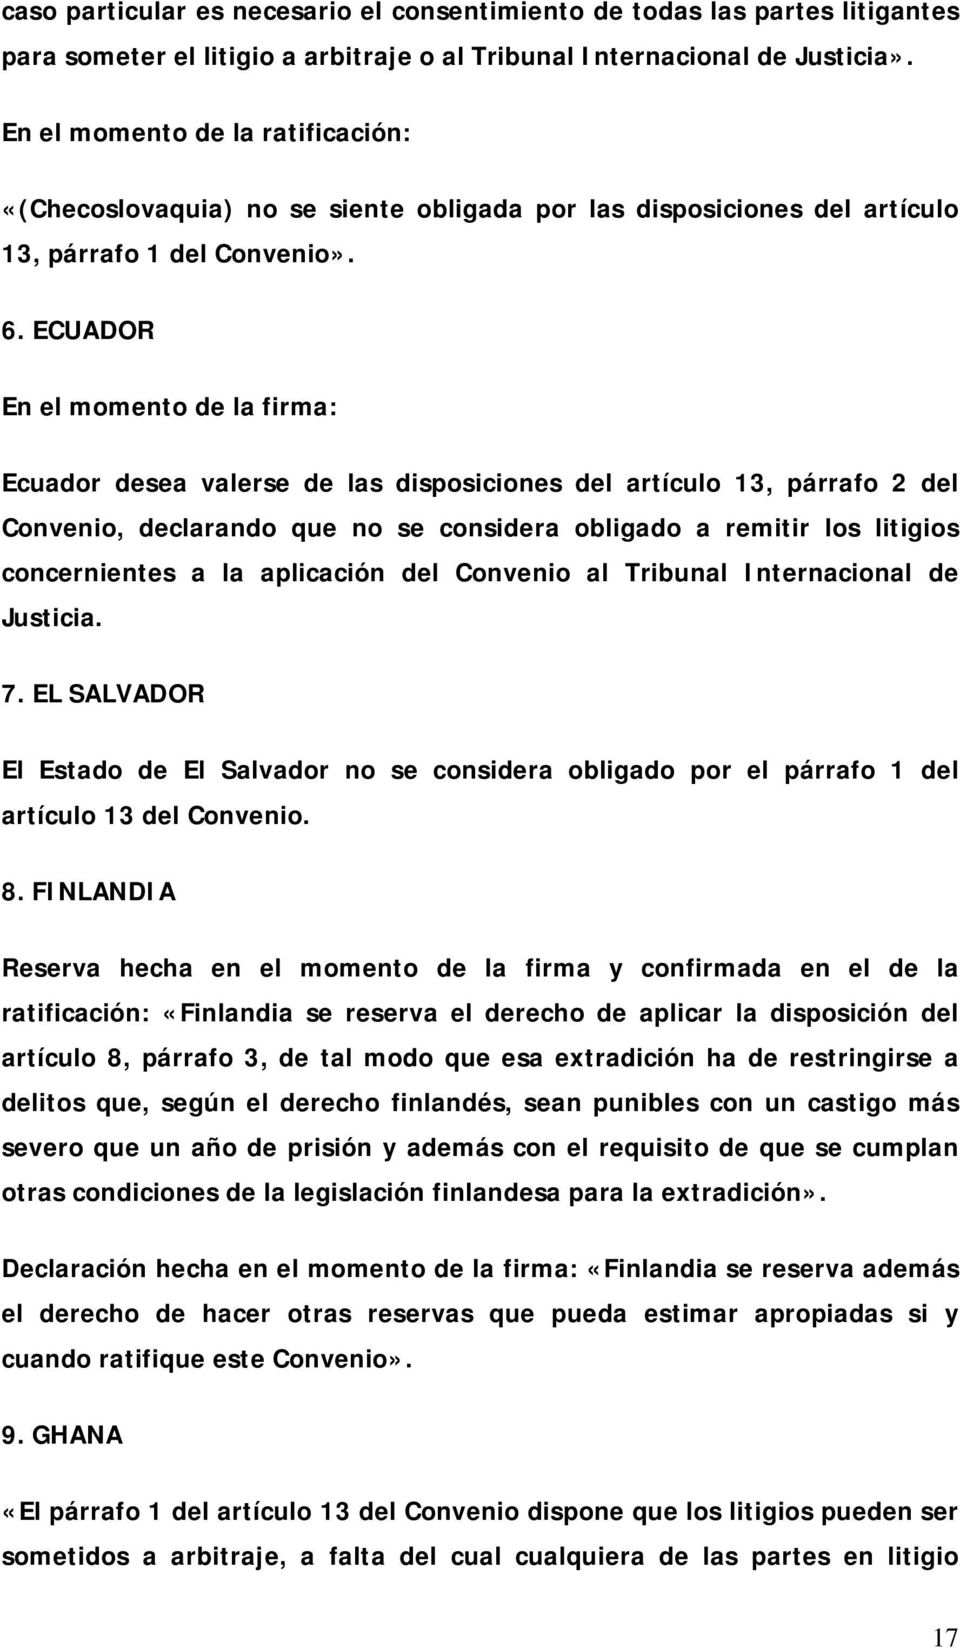 ECUADOR En el momento de la firma: Ecuador desea valerse de las disposiciones del artículo 13, párrafo 2 del Convenio, declarando que no se considera obligado a remitir los litigios concernientes a